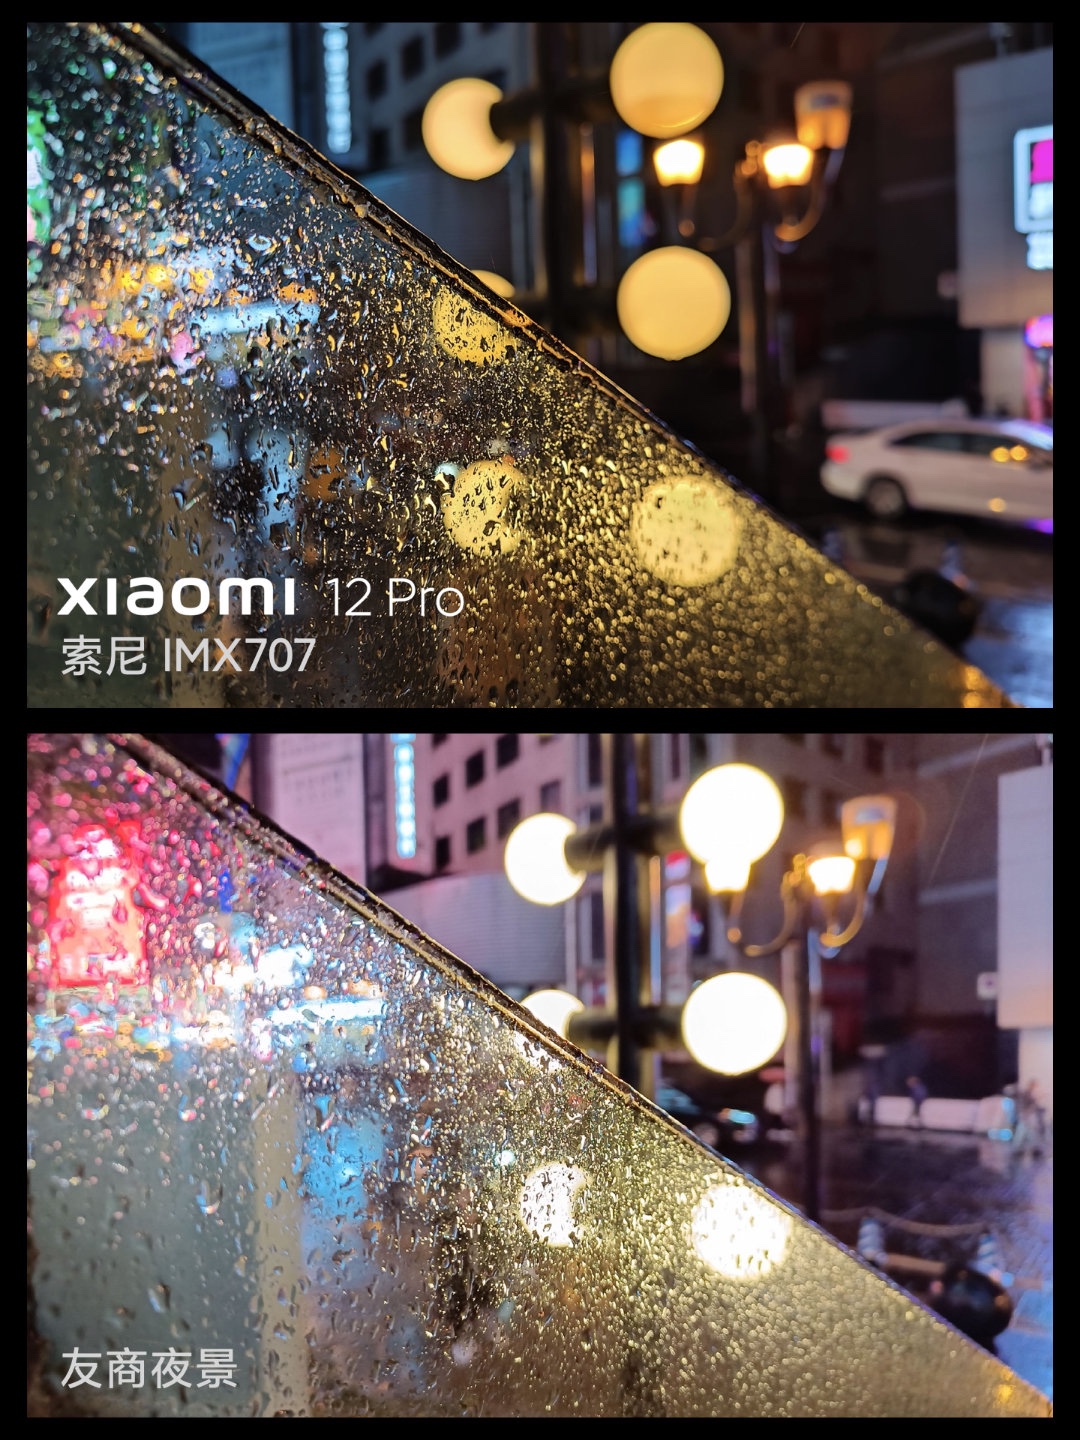 przykładowe zdjecie z Xiaomi 12 Pro